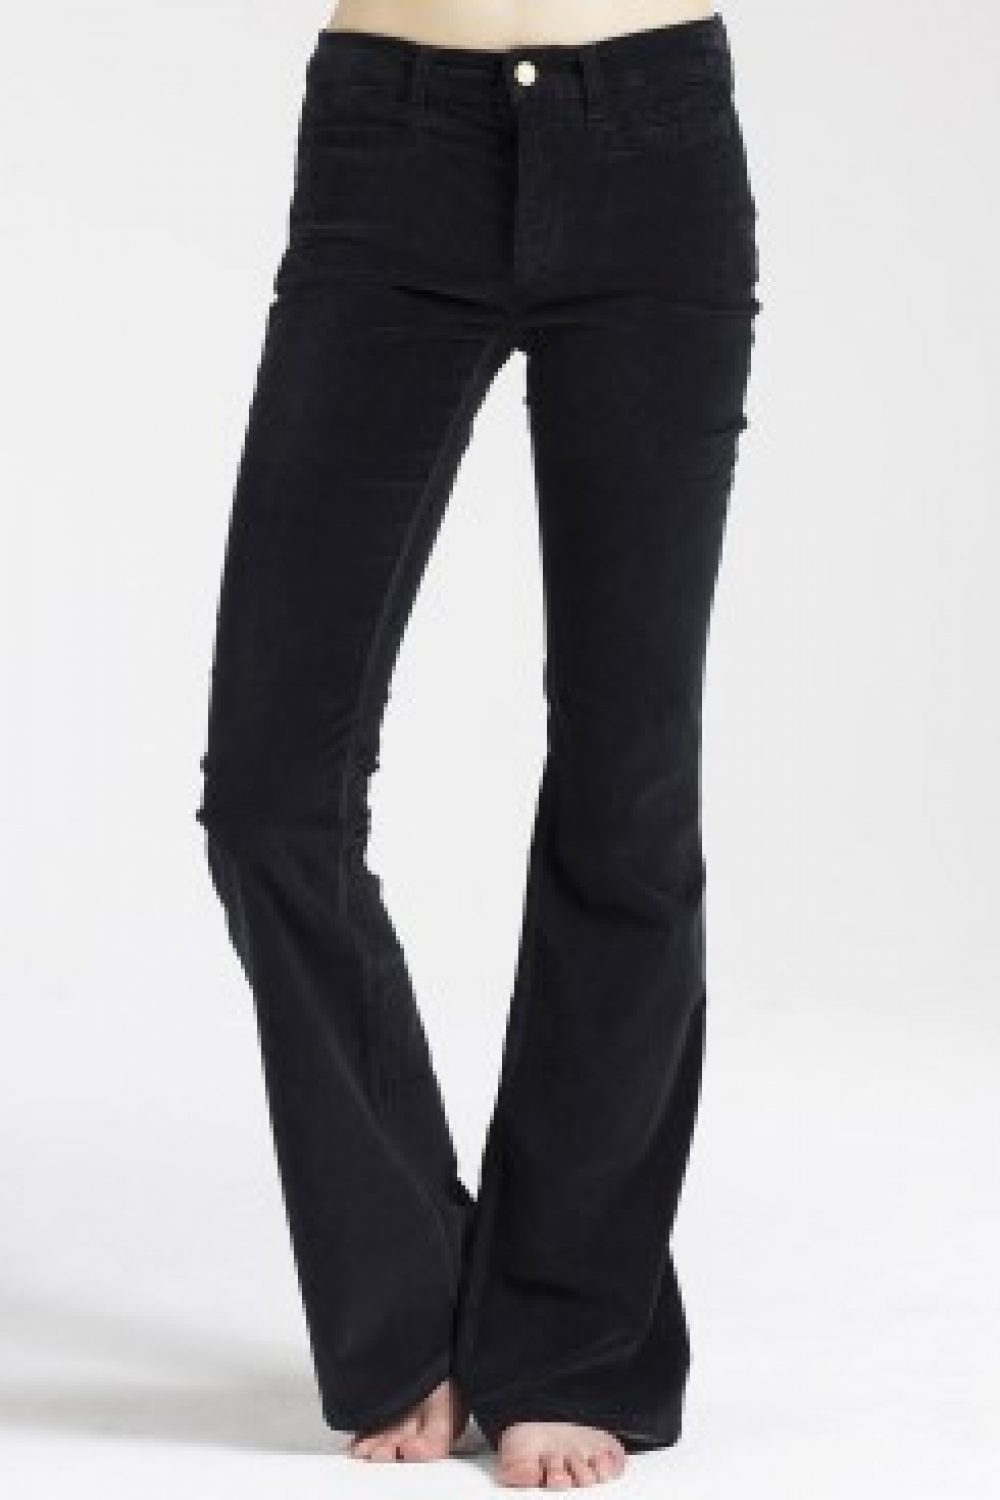 Trend Alert! Velvet Jeans